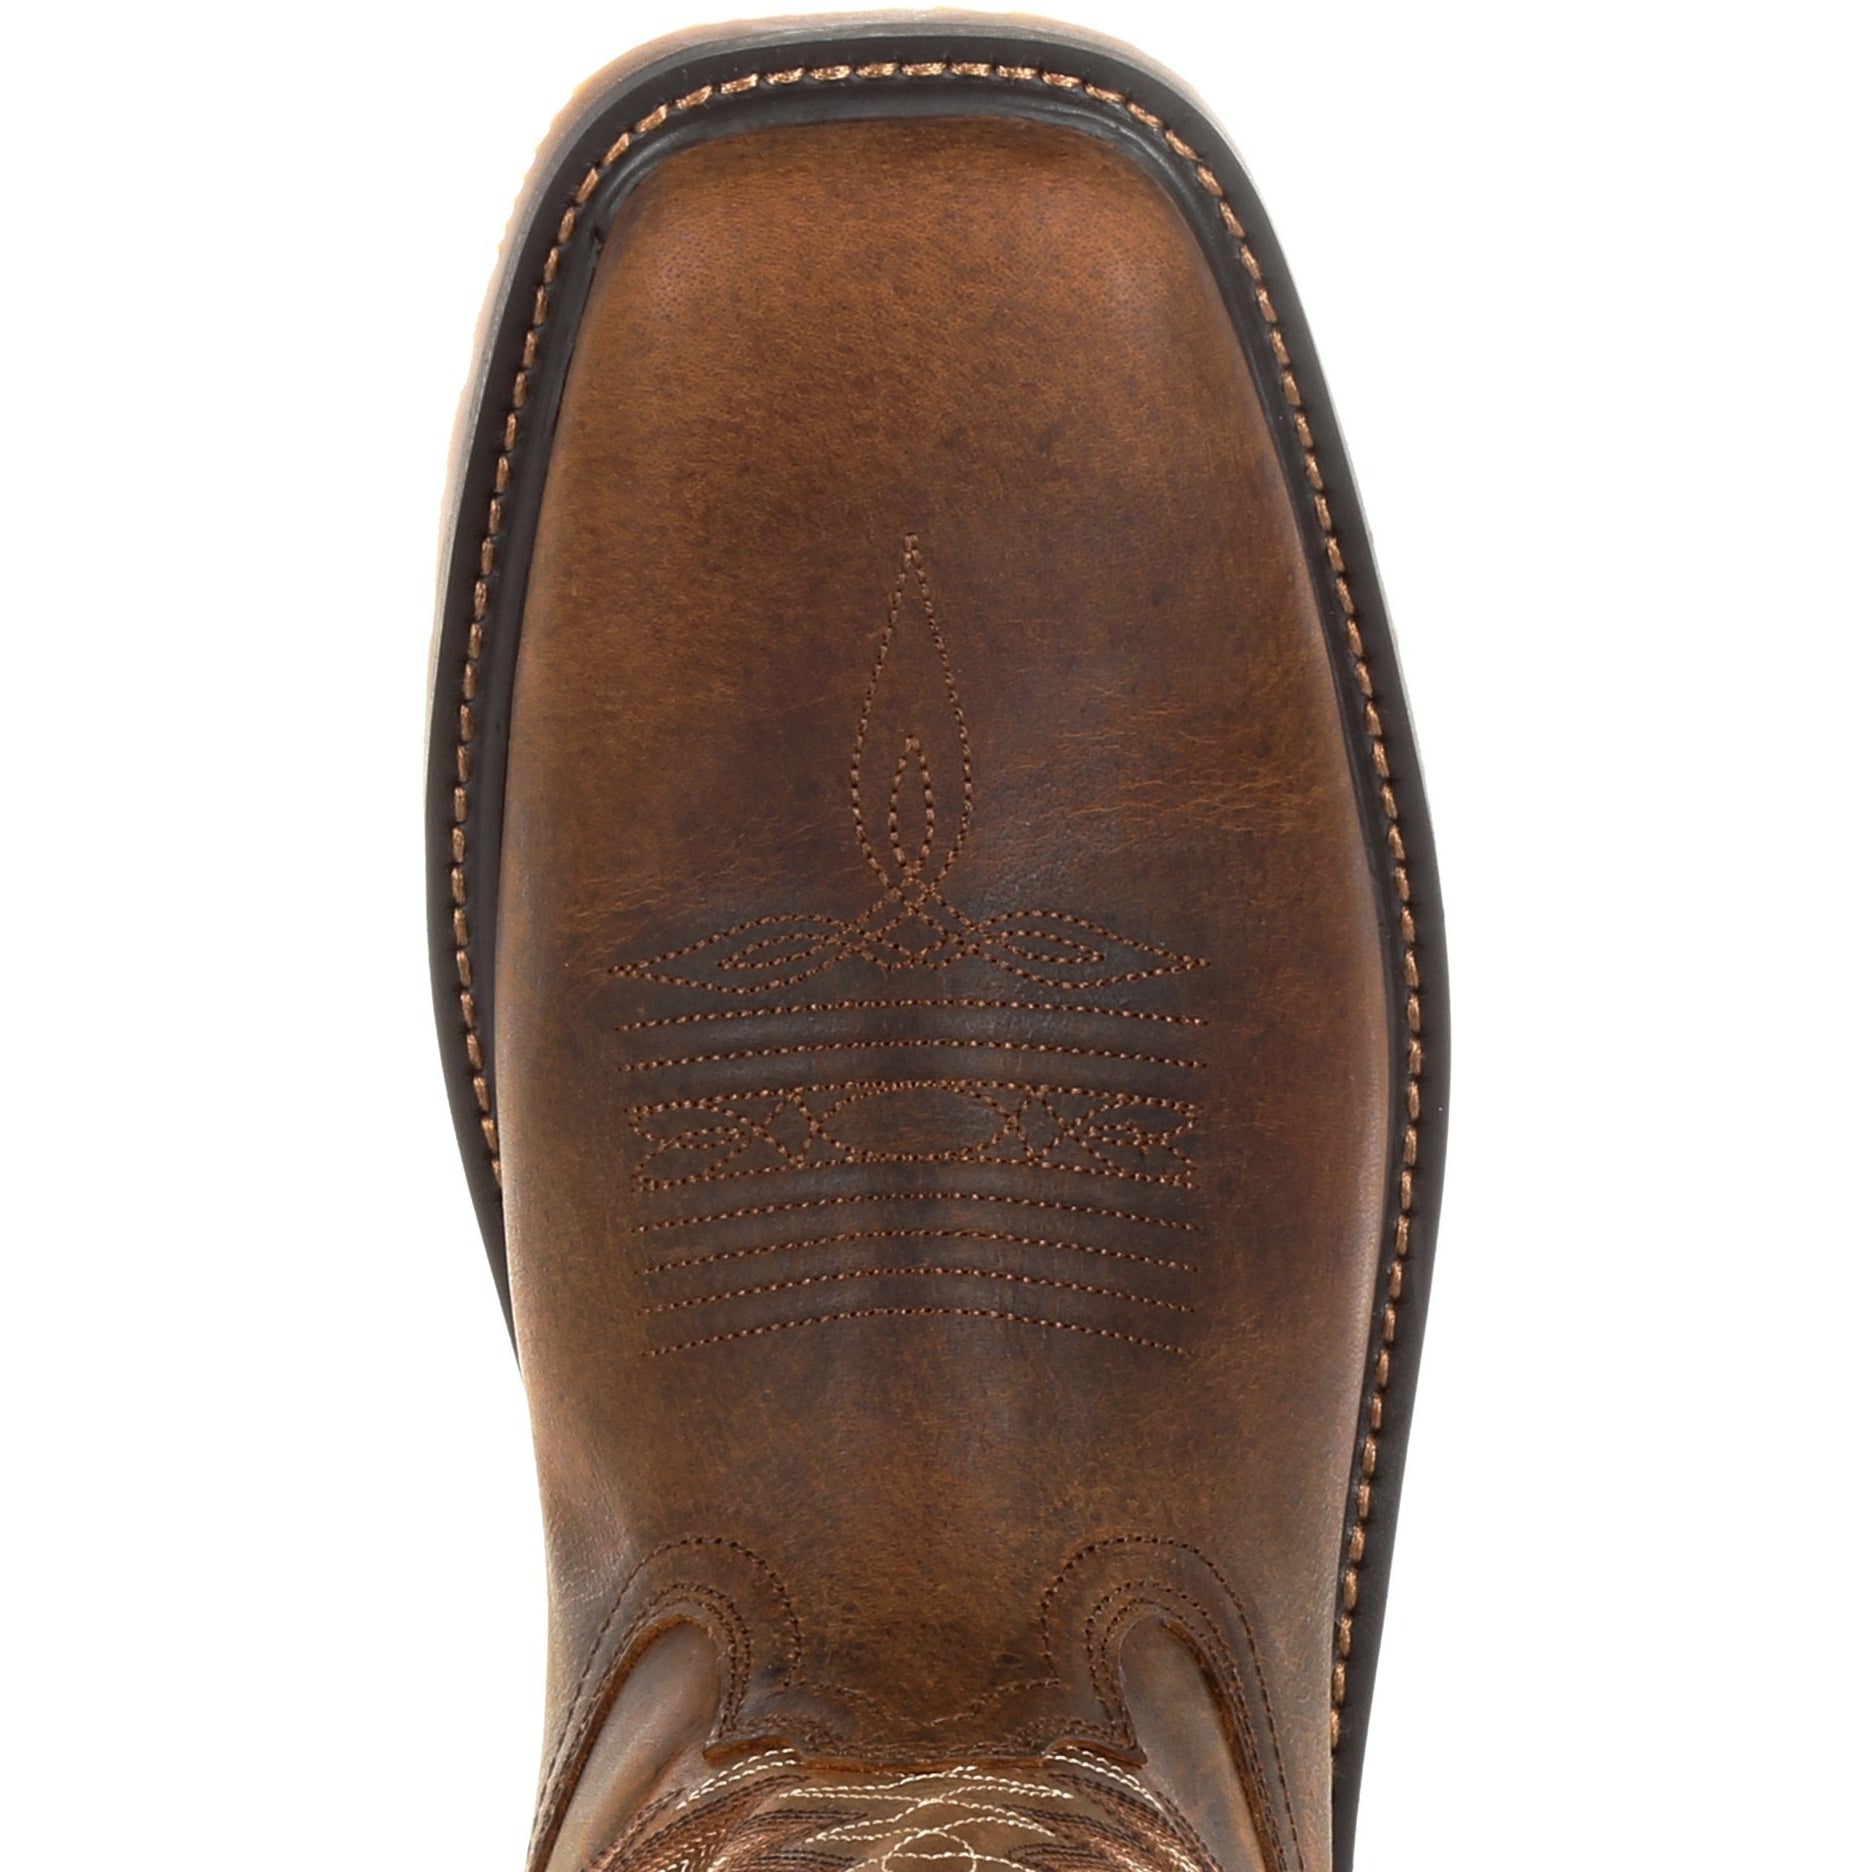 Durango Men's Workhorse 11" Steel Toe Western Work Boot- Brown- DDB0202  - Overlook Boots